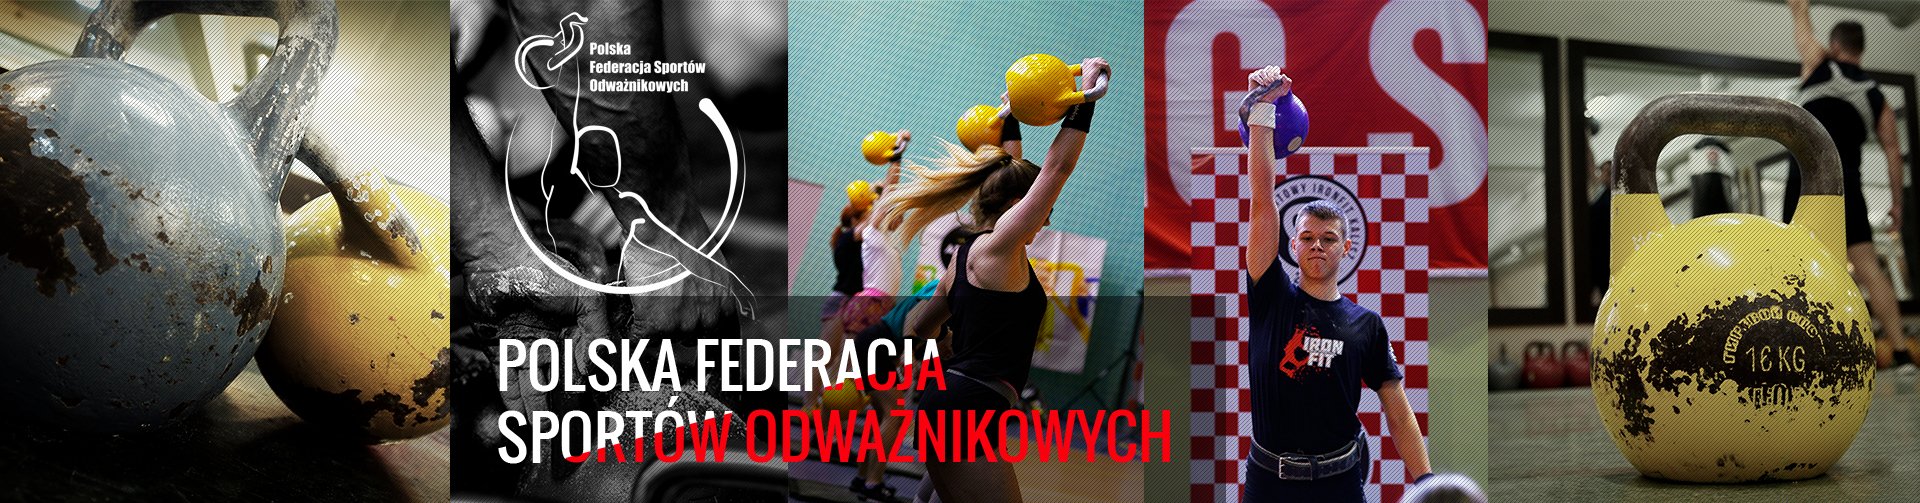 Polska Federacja Sportów Odważnikowych